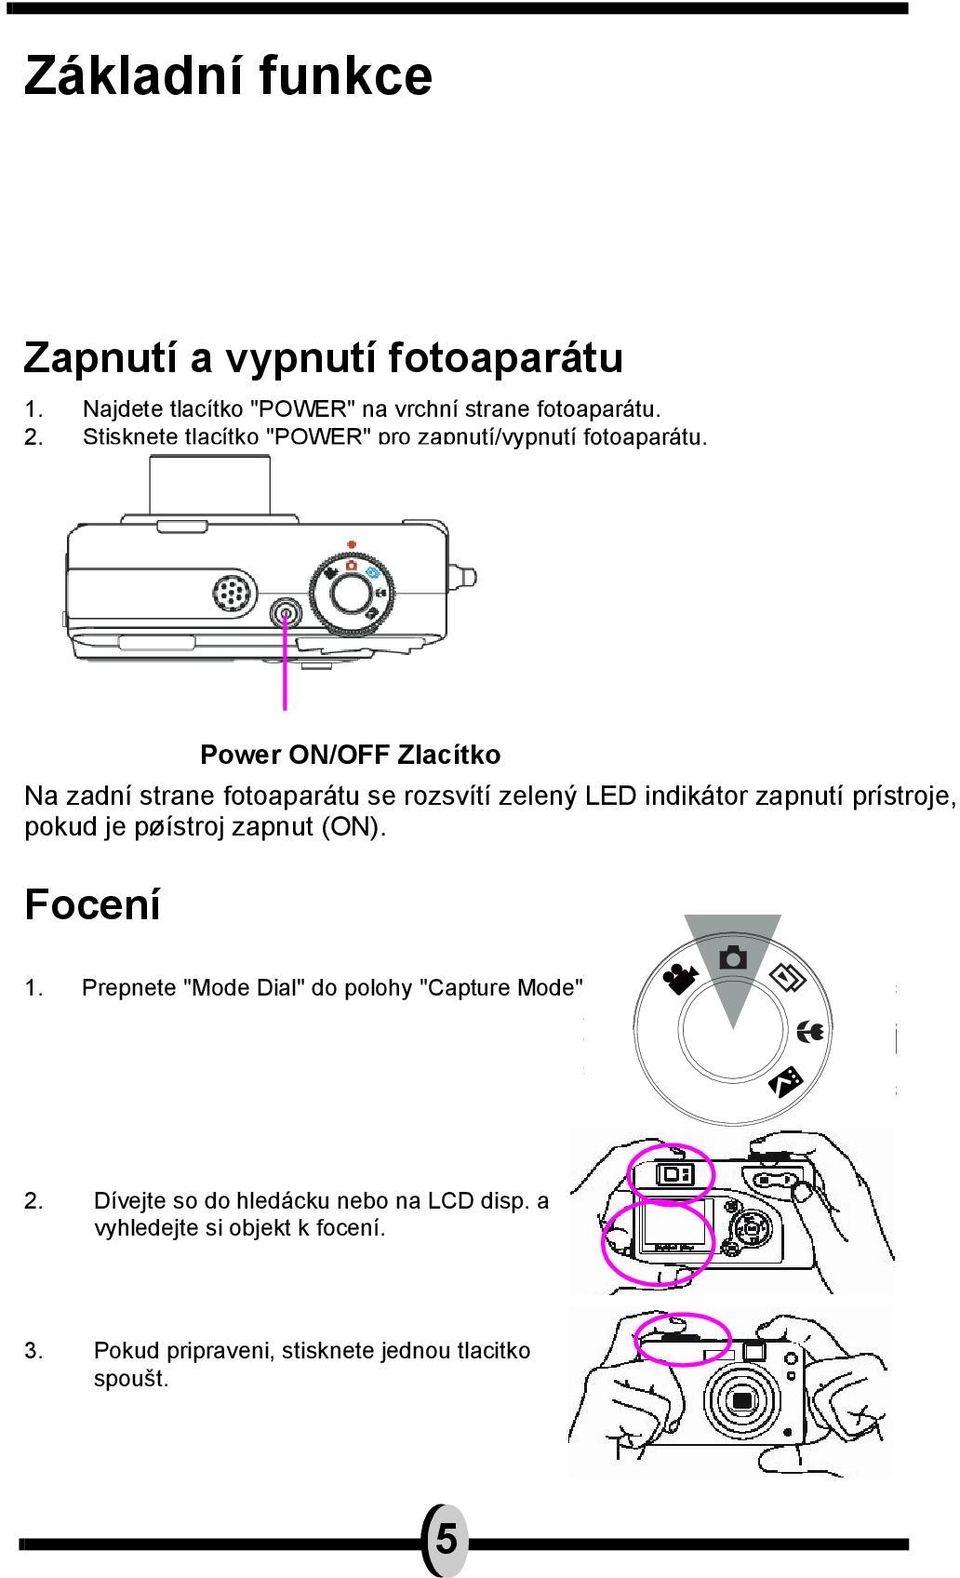 Power ON/OFF Zlacítko Na zadní strane fotoaparátu se rozsvítí zelený LED indikátor zapnutí prístroje, pokud je pøístroj